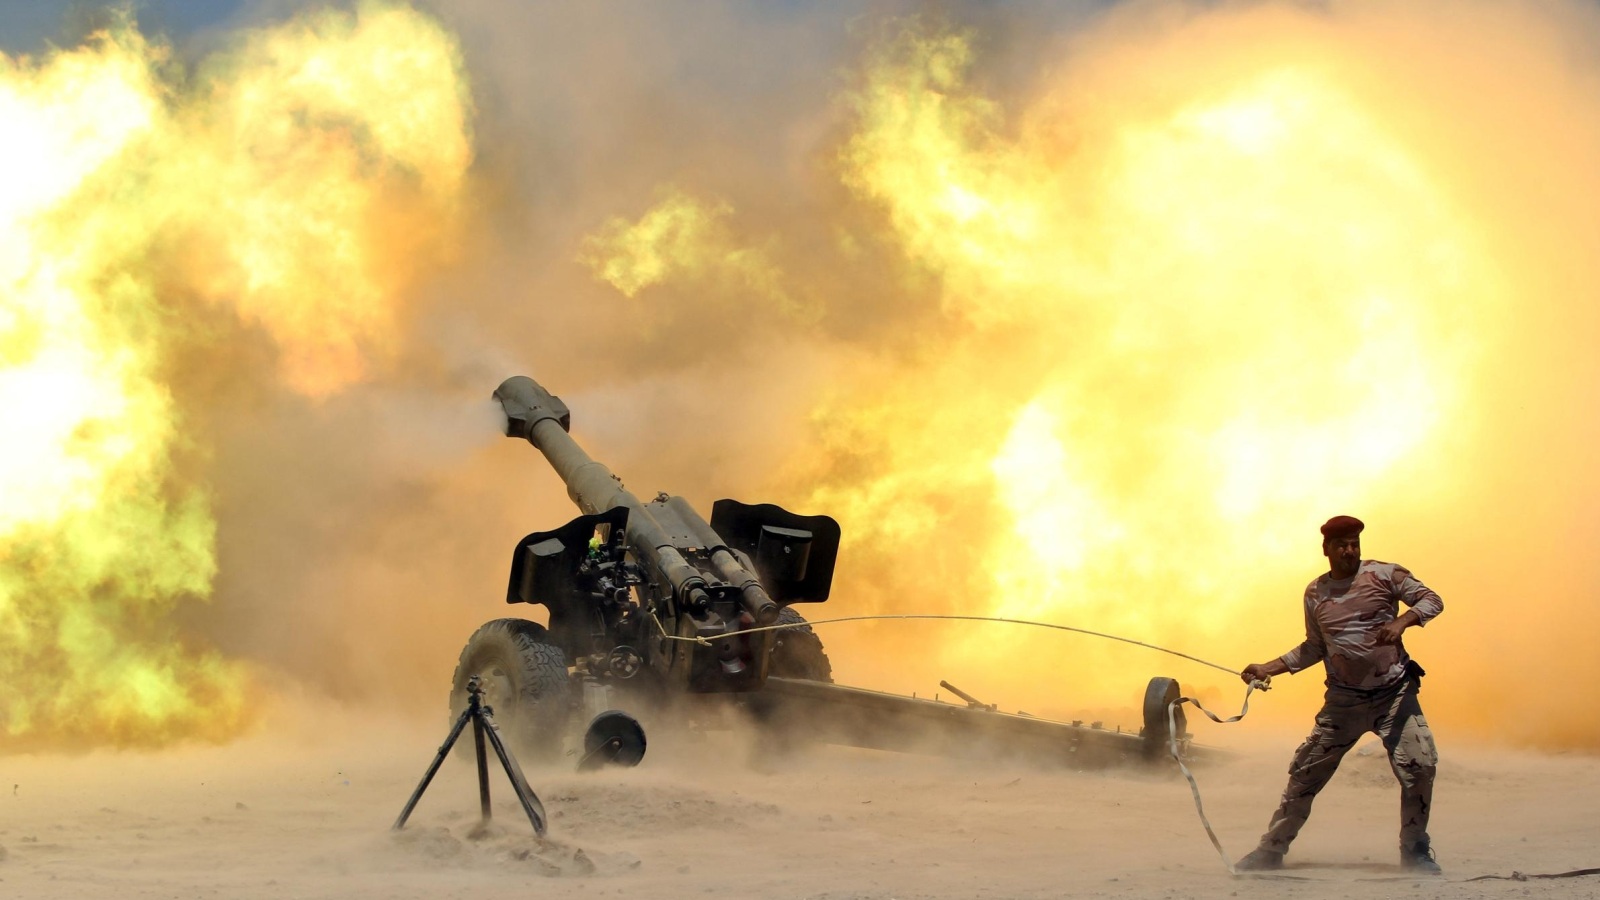 ‪أحد أفراد القوات العراقية يطلق قذيفة مدفعية أثناء الاشتباك مع تنظيم الدولة قرب الفلوجة منتصف 2016‬ (رويترز)